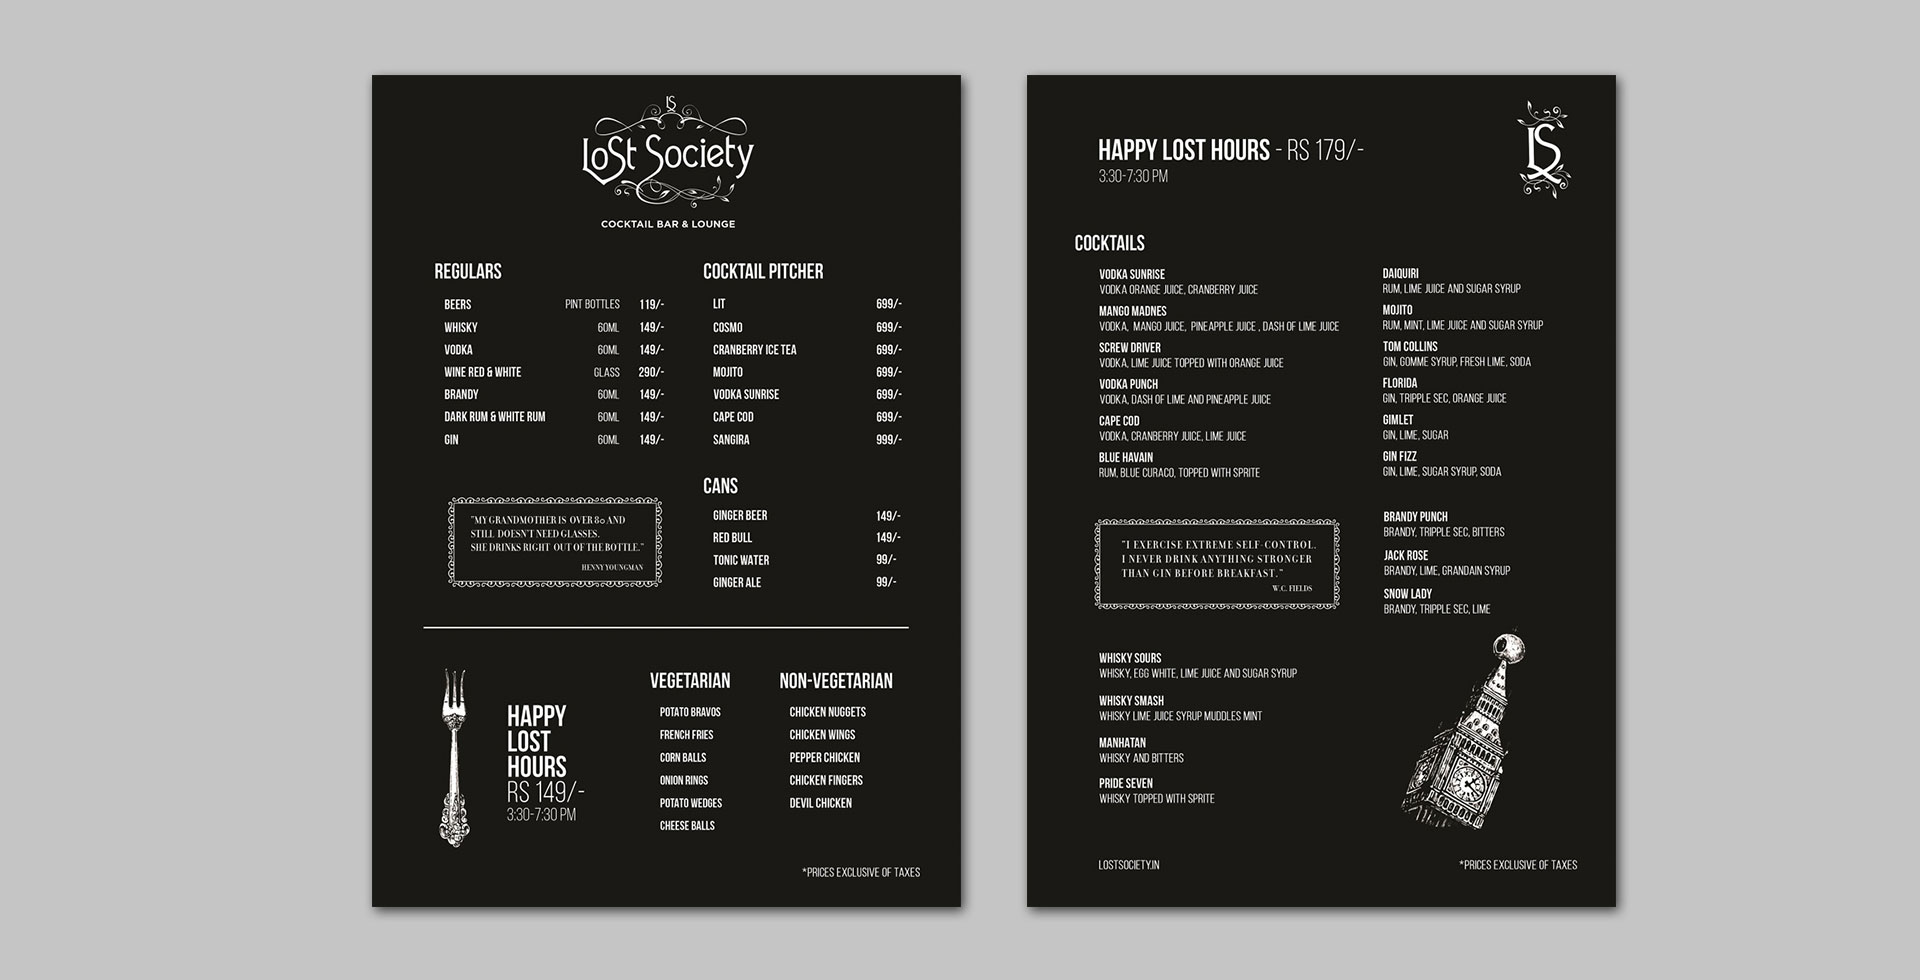 3Lost-society-menu